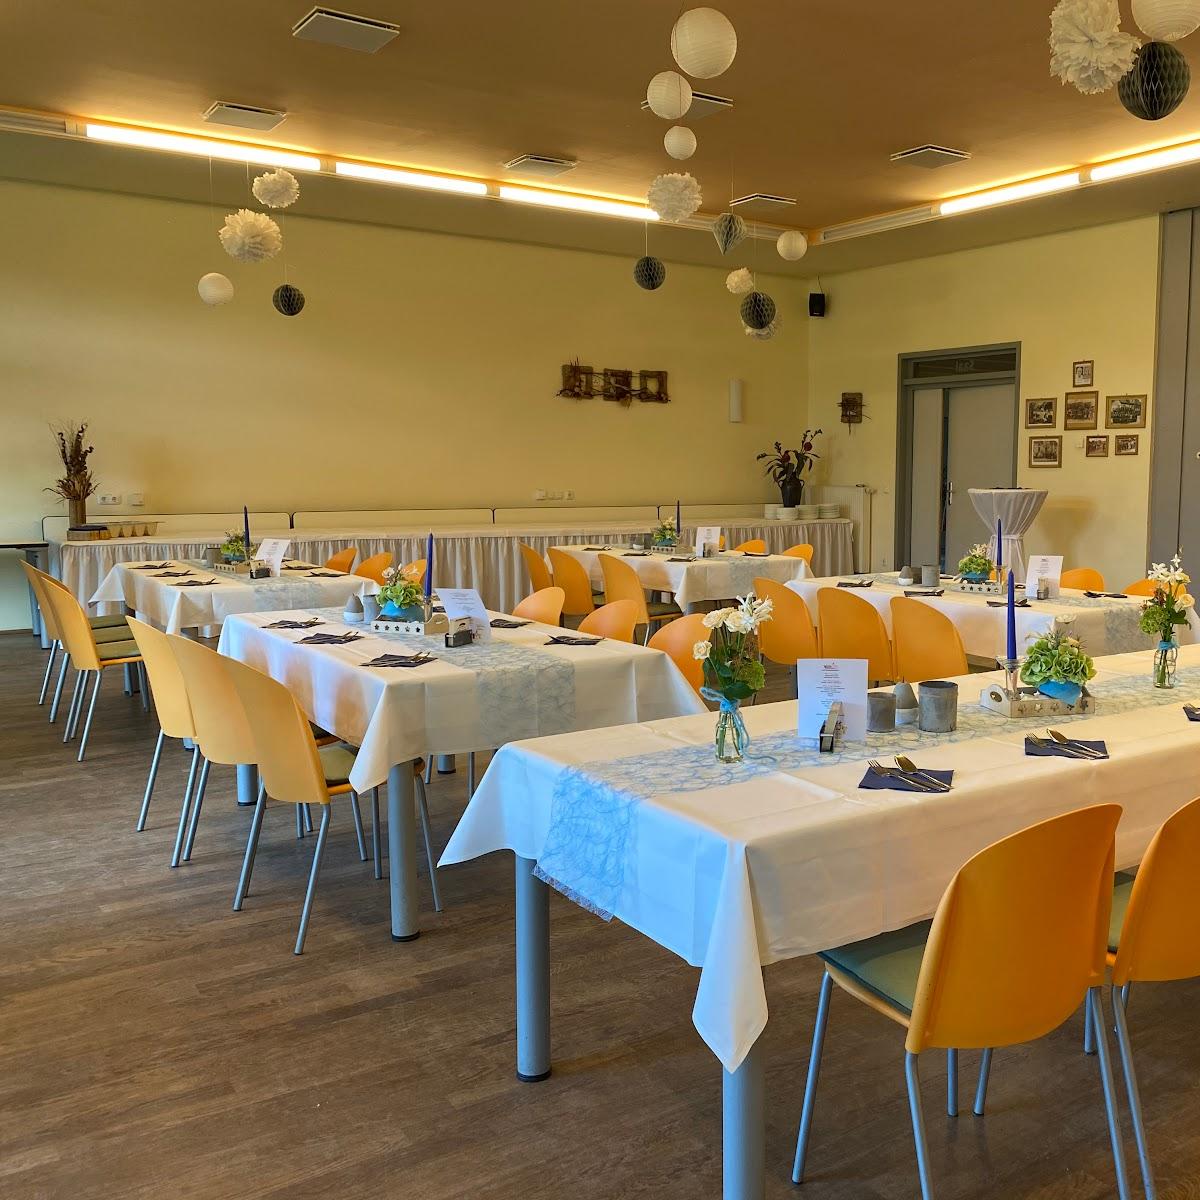 Restaurant "Dorf- und Vereinsanlage Haasow" in Neuhausen-Spree